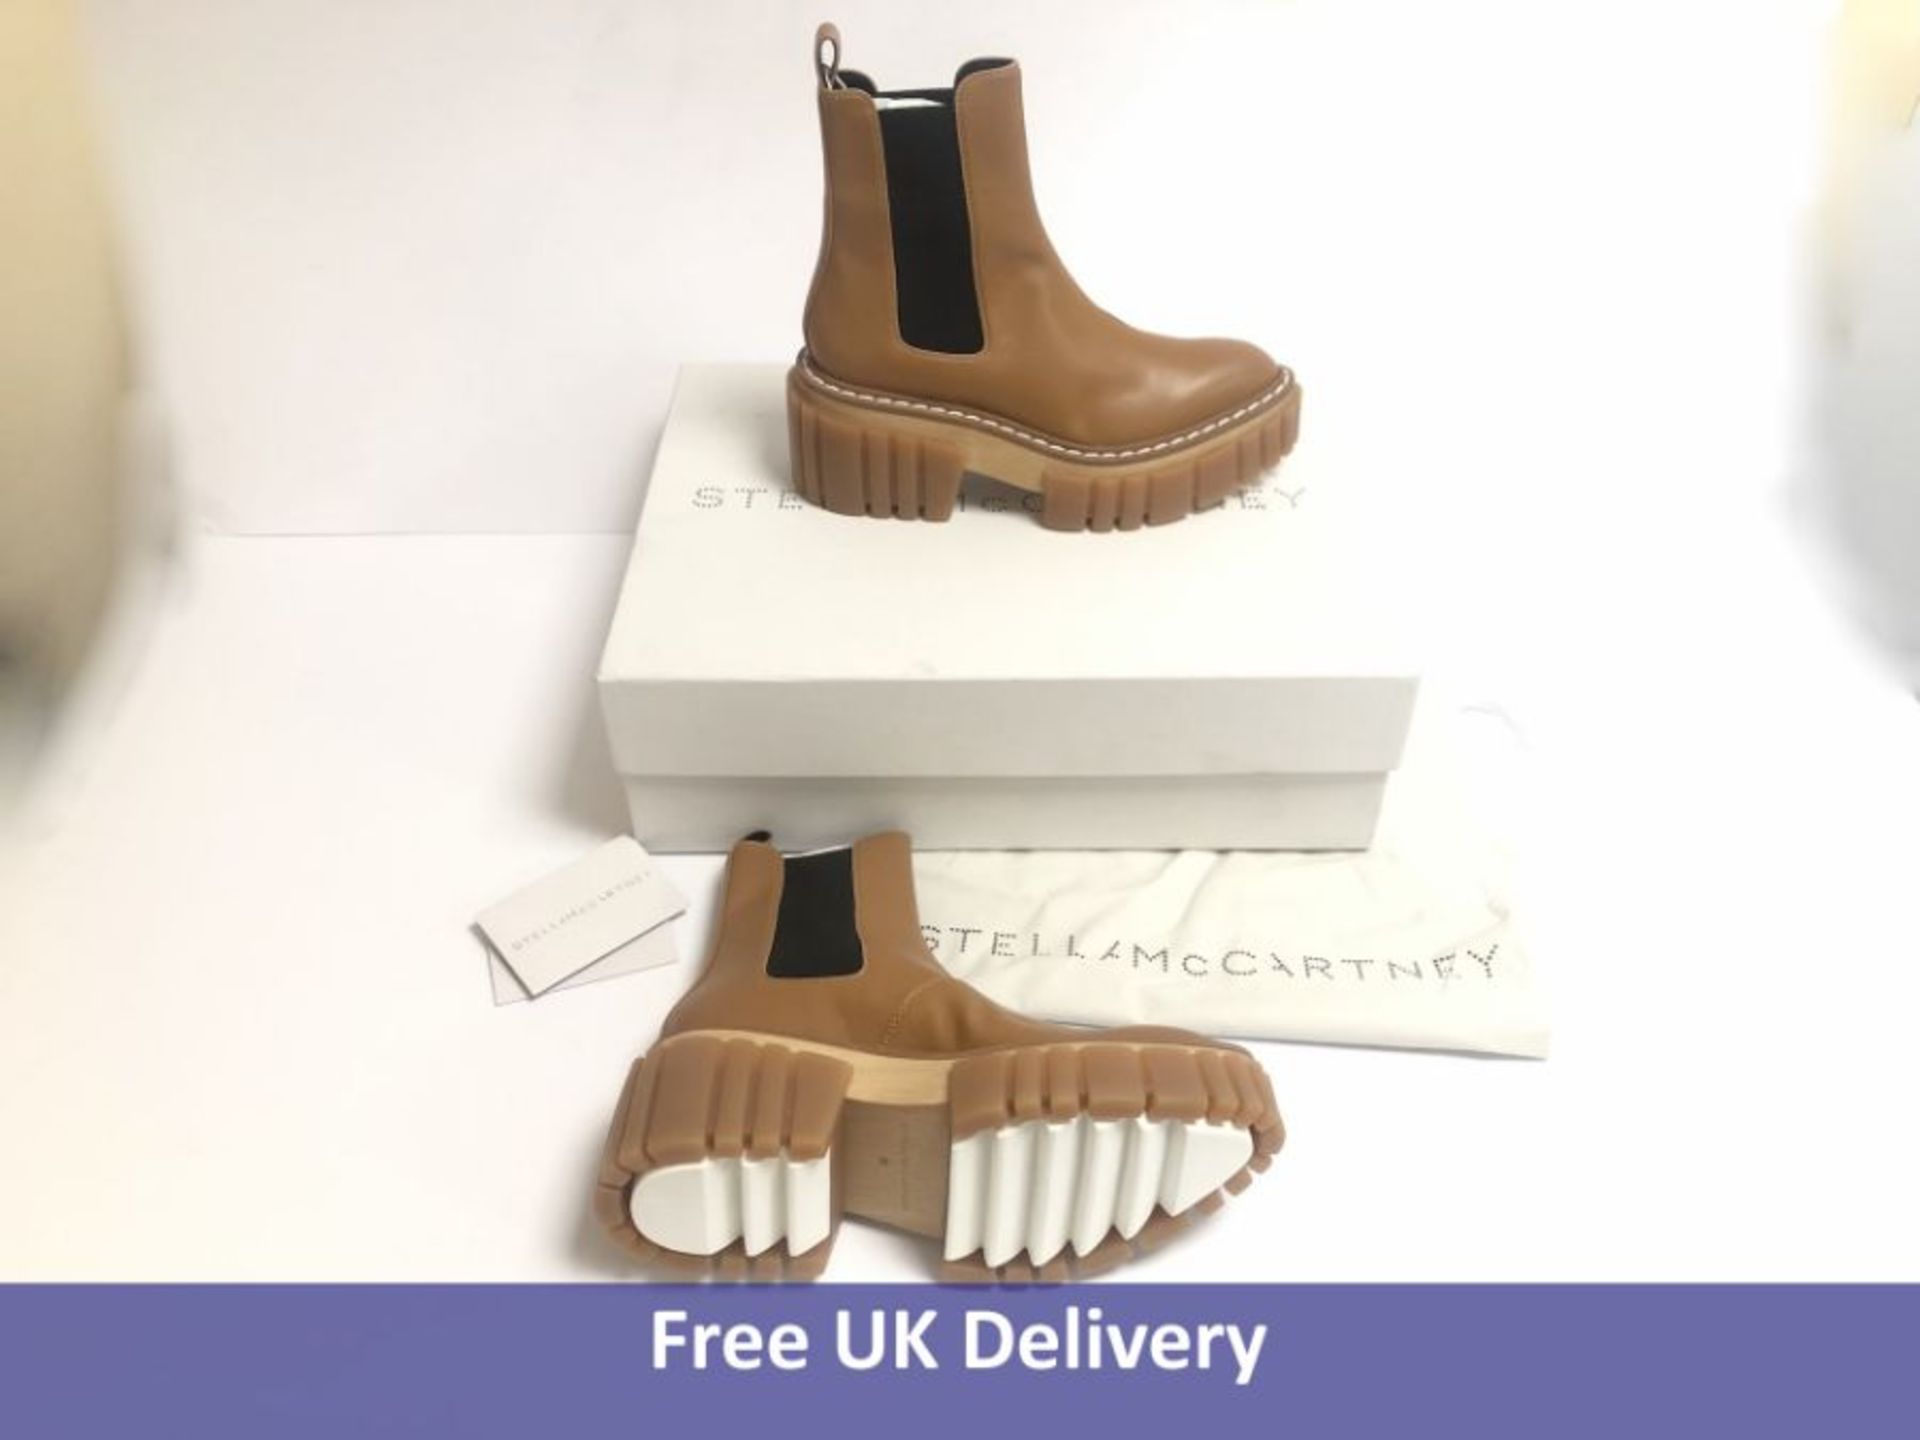 Stella McCartney Sustainable Wood Emilie Boots, UK 5.5. Dirty Box